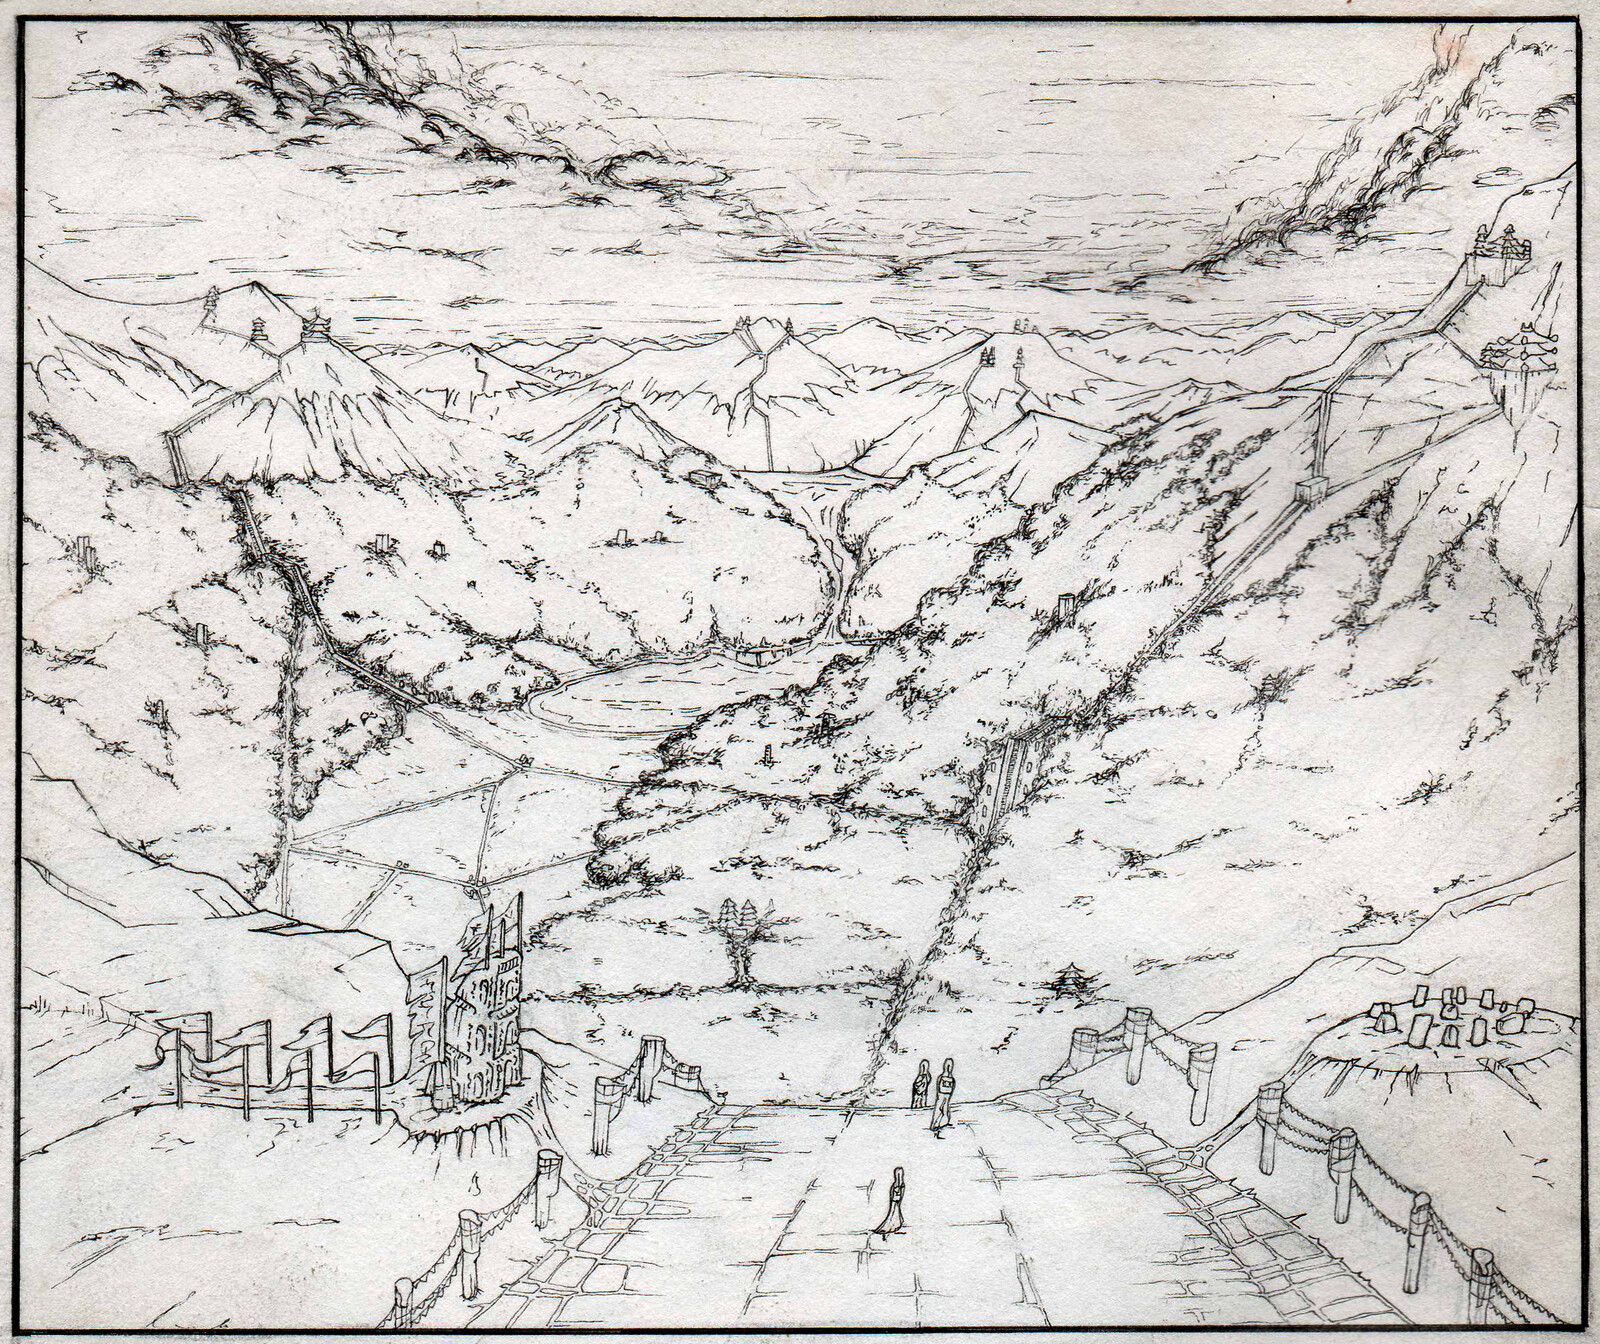 Pen illustration of fantasy landscape